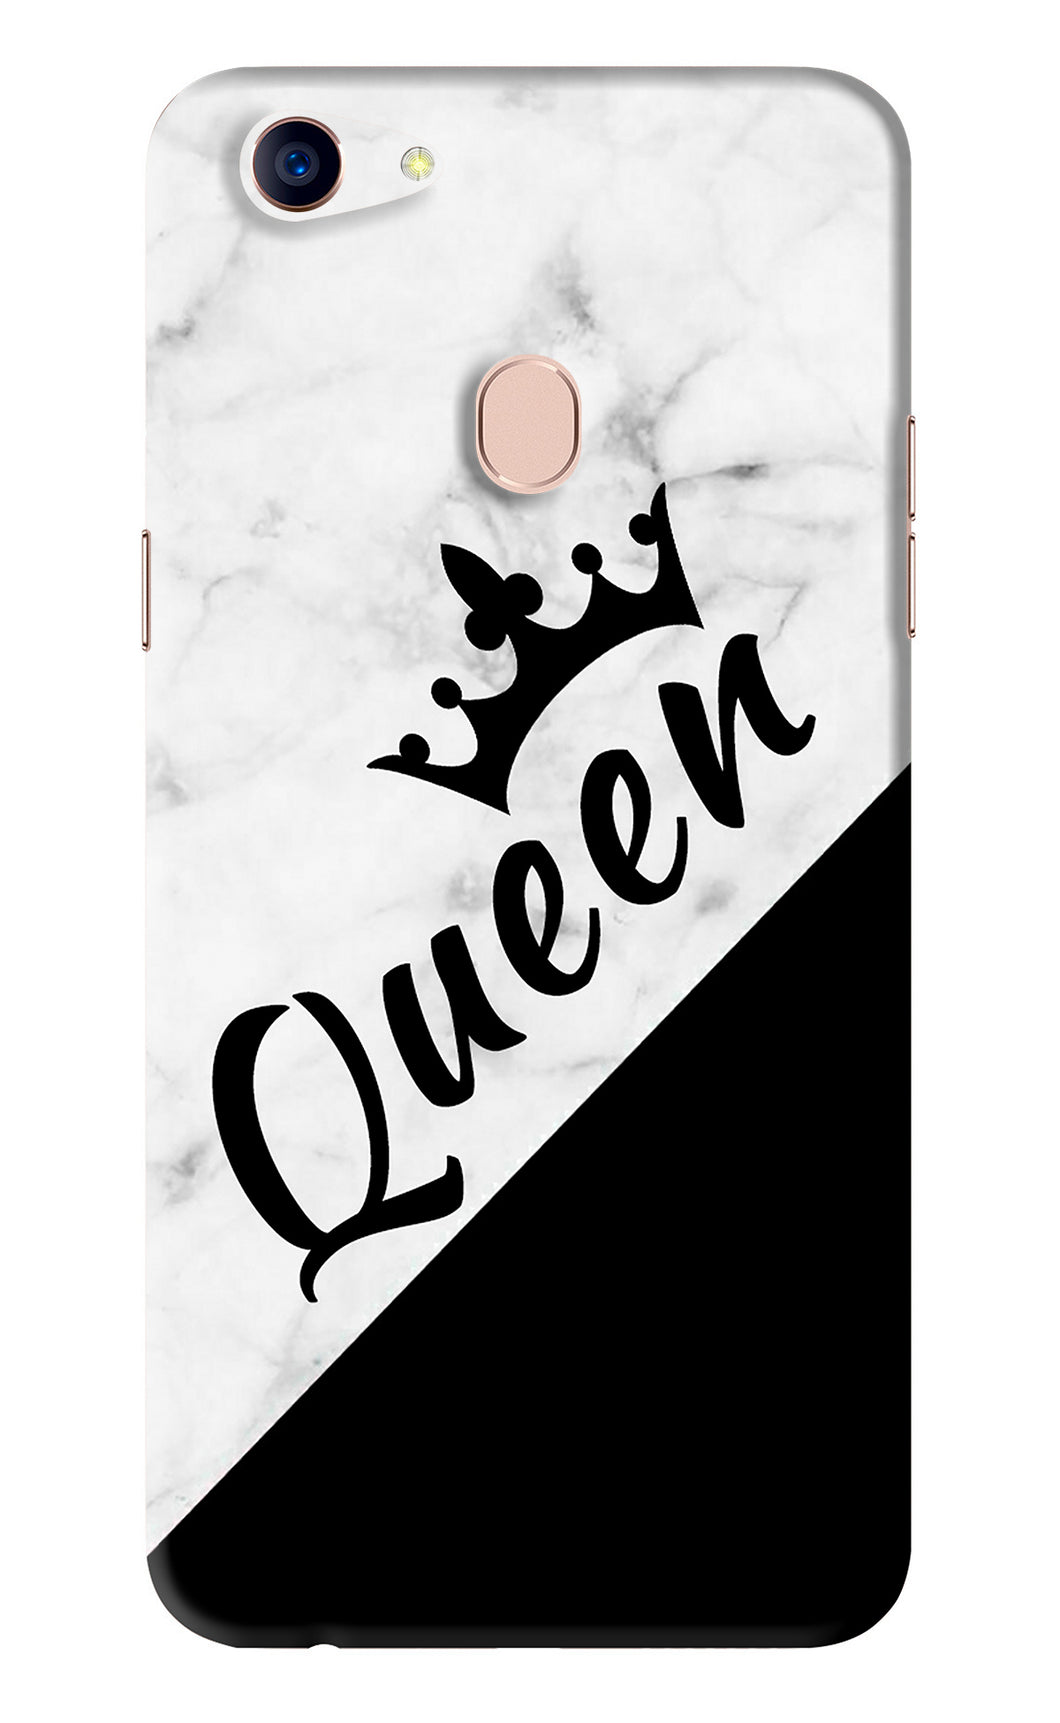 Queen Oppo F5 Back Skin Wrap